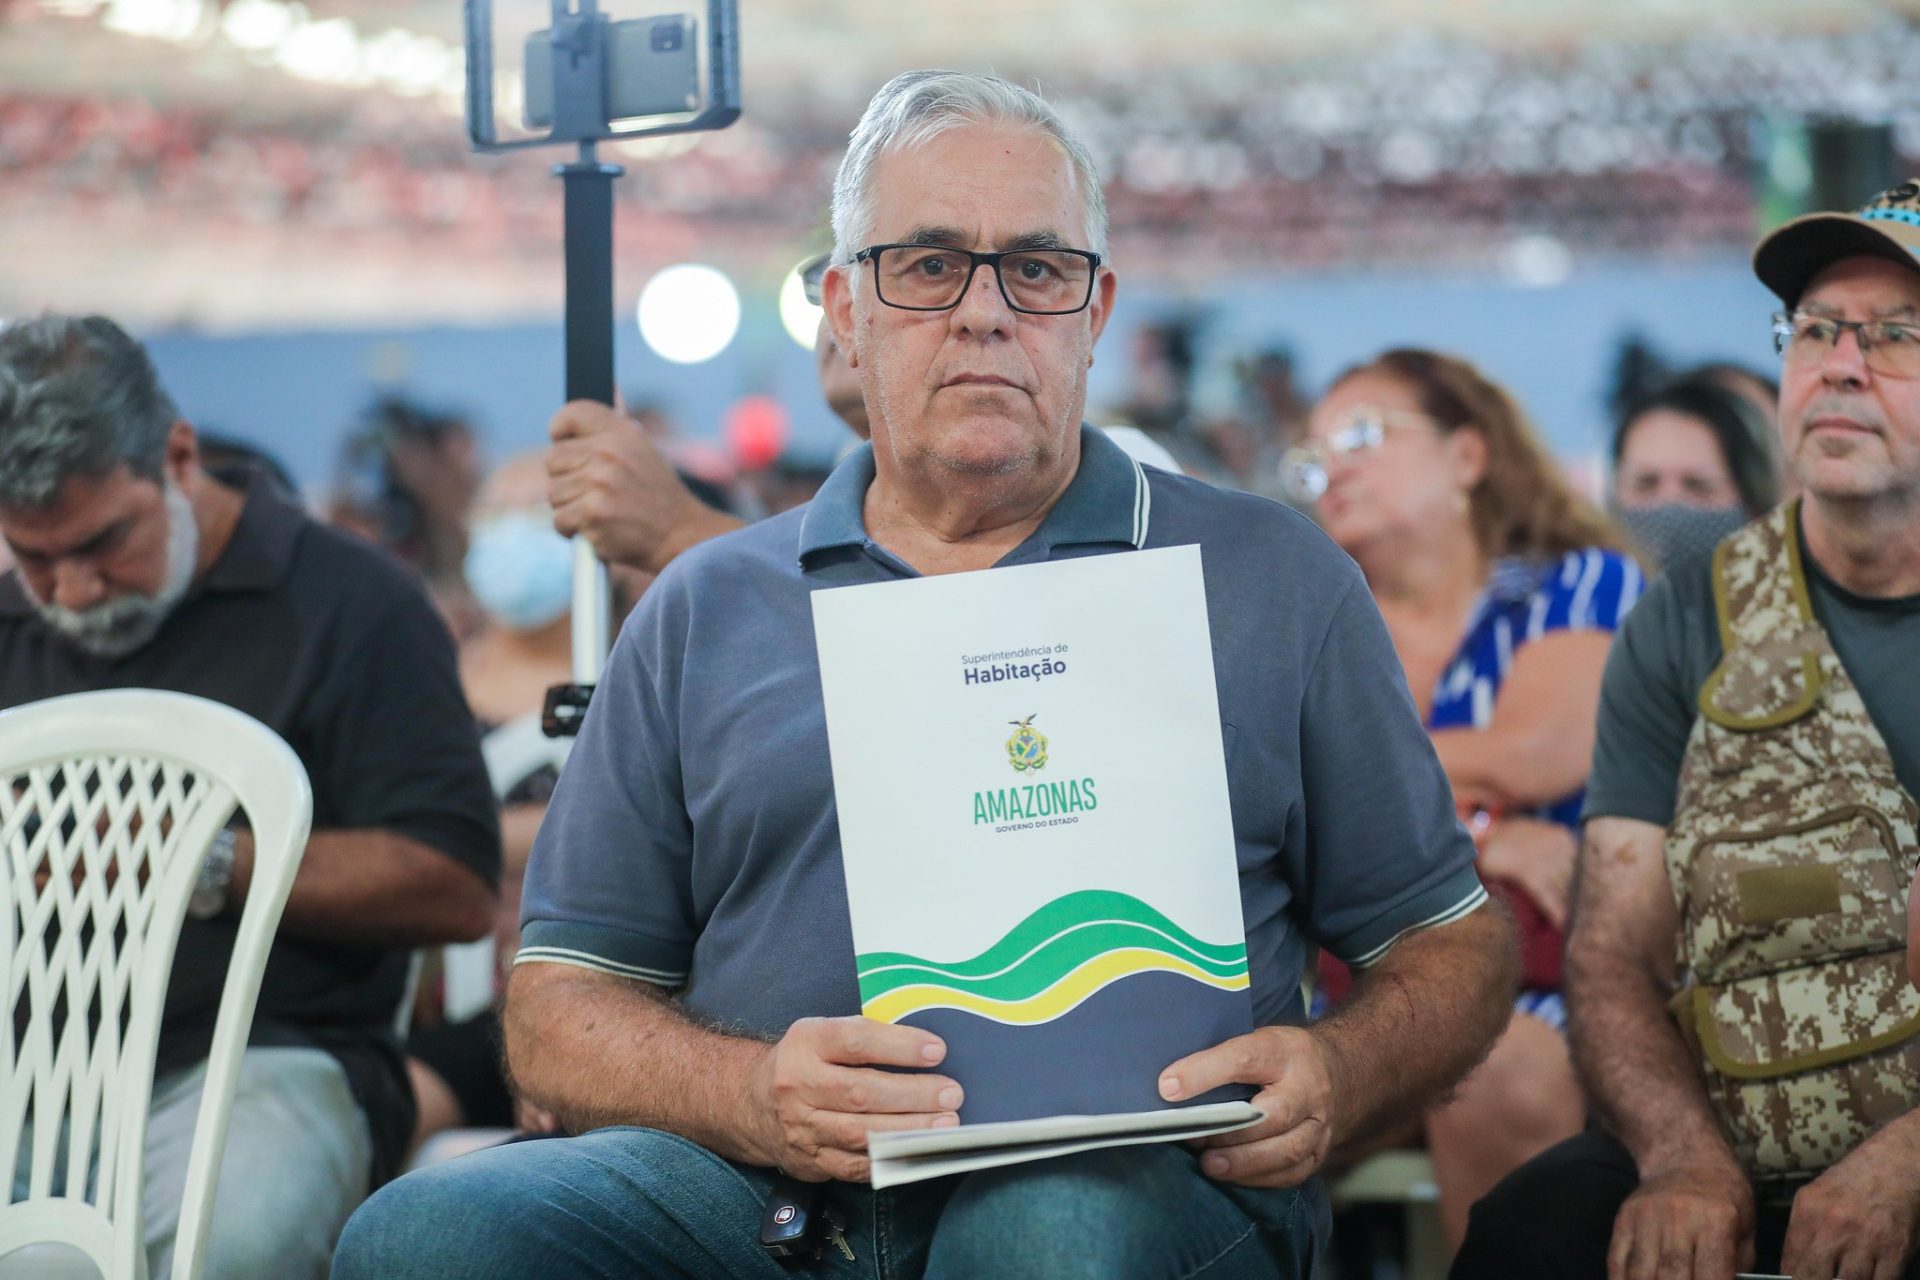 Entrega do Habite-se nesta terça foi para moradores do Nova Cidade, em Manaus - Foto: Ruan Souza/Semcom